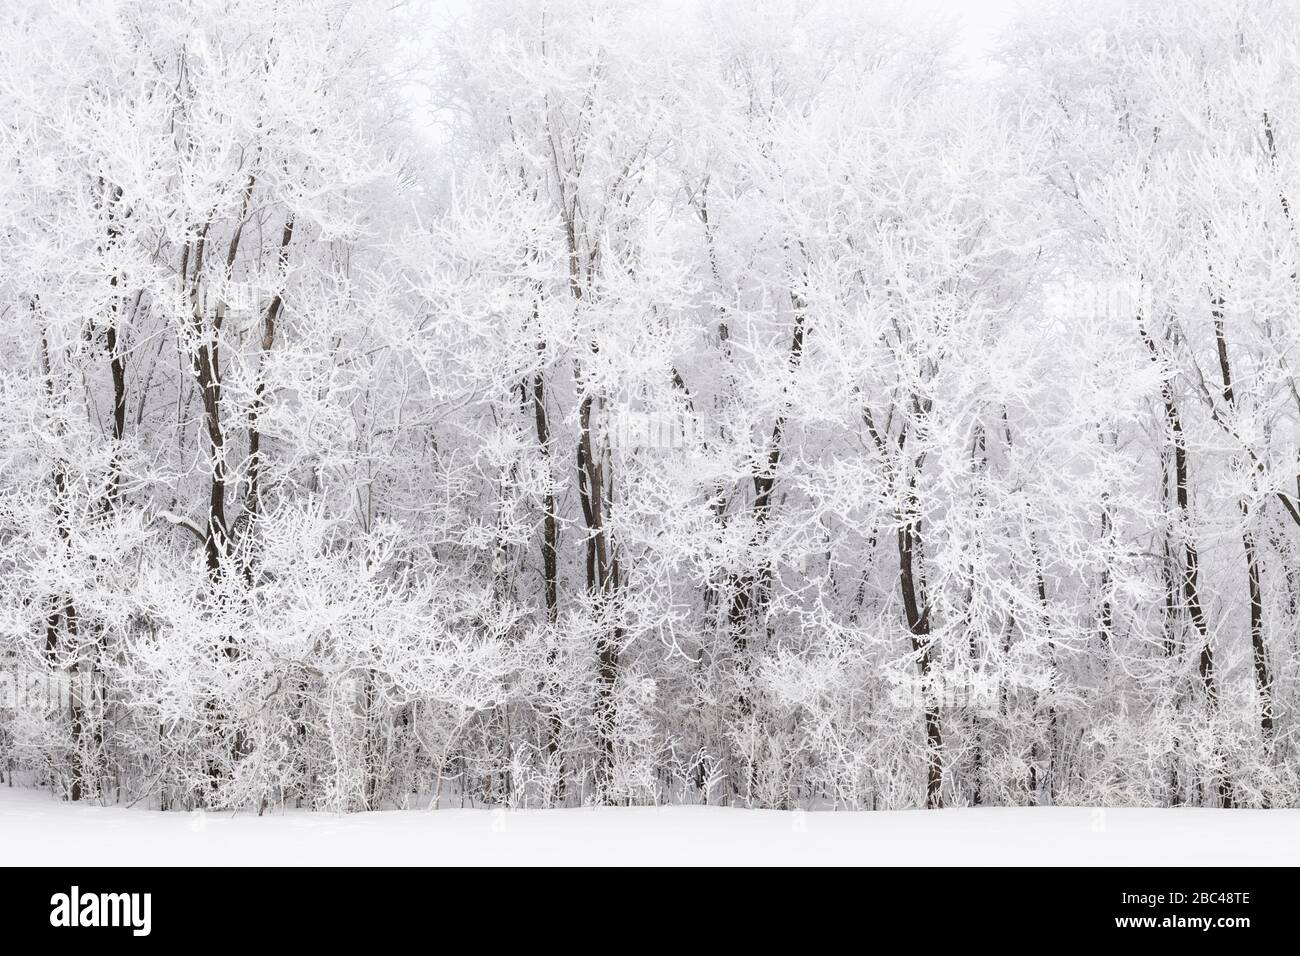 Le givre (givre rime) couvrant les graminées et les arbres des prairies, hiver, milieu-ouest des États-Unis, par Dominique Braud/Dembinsky photo Assoc Banque D'Images